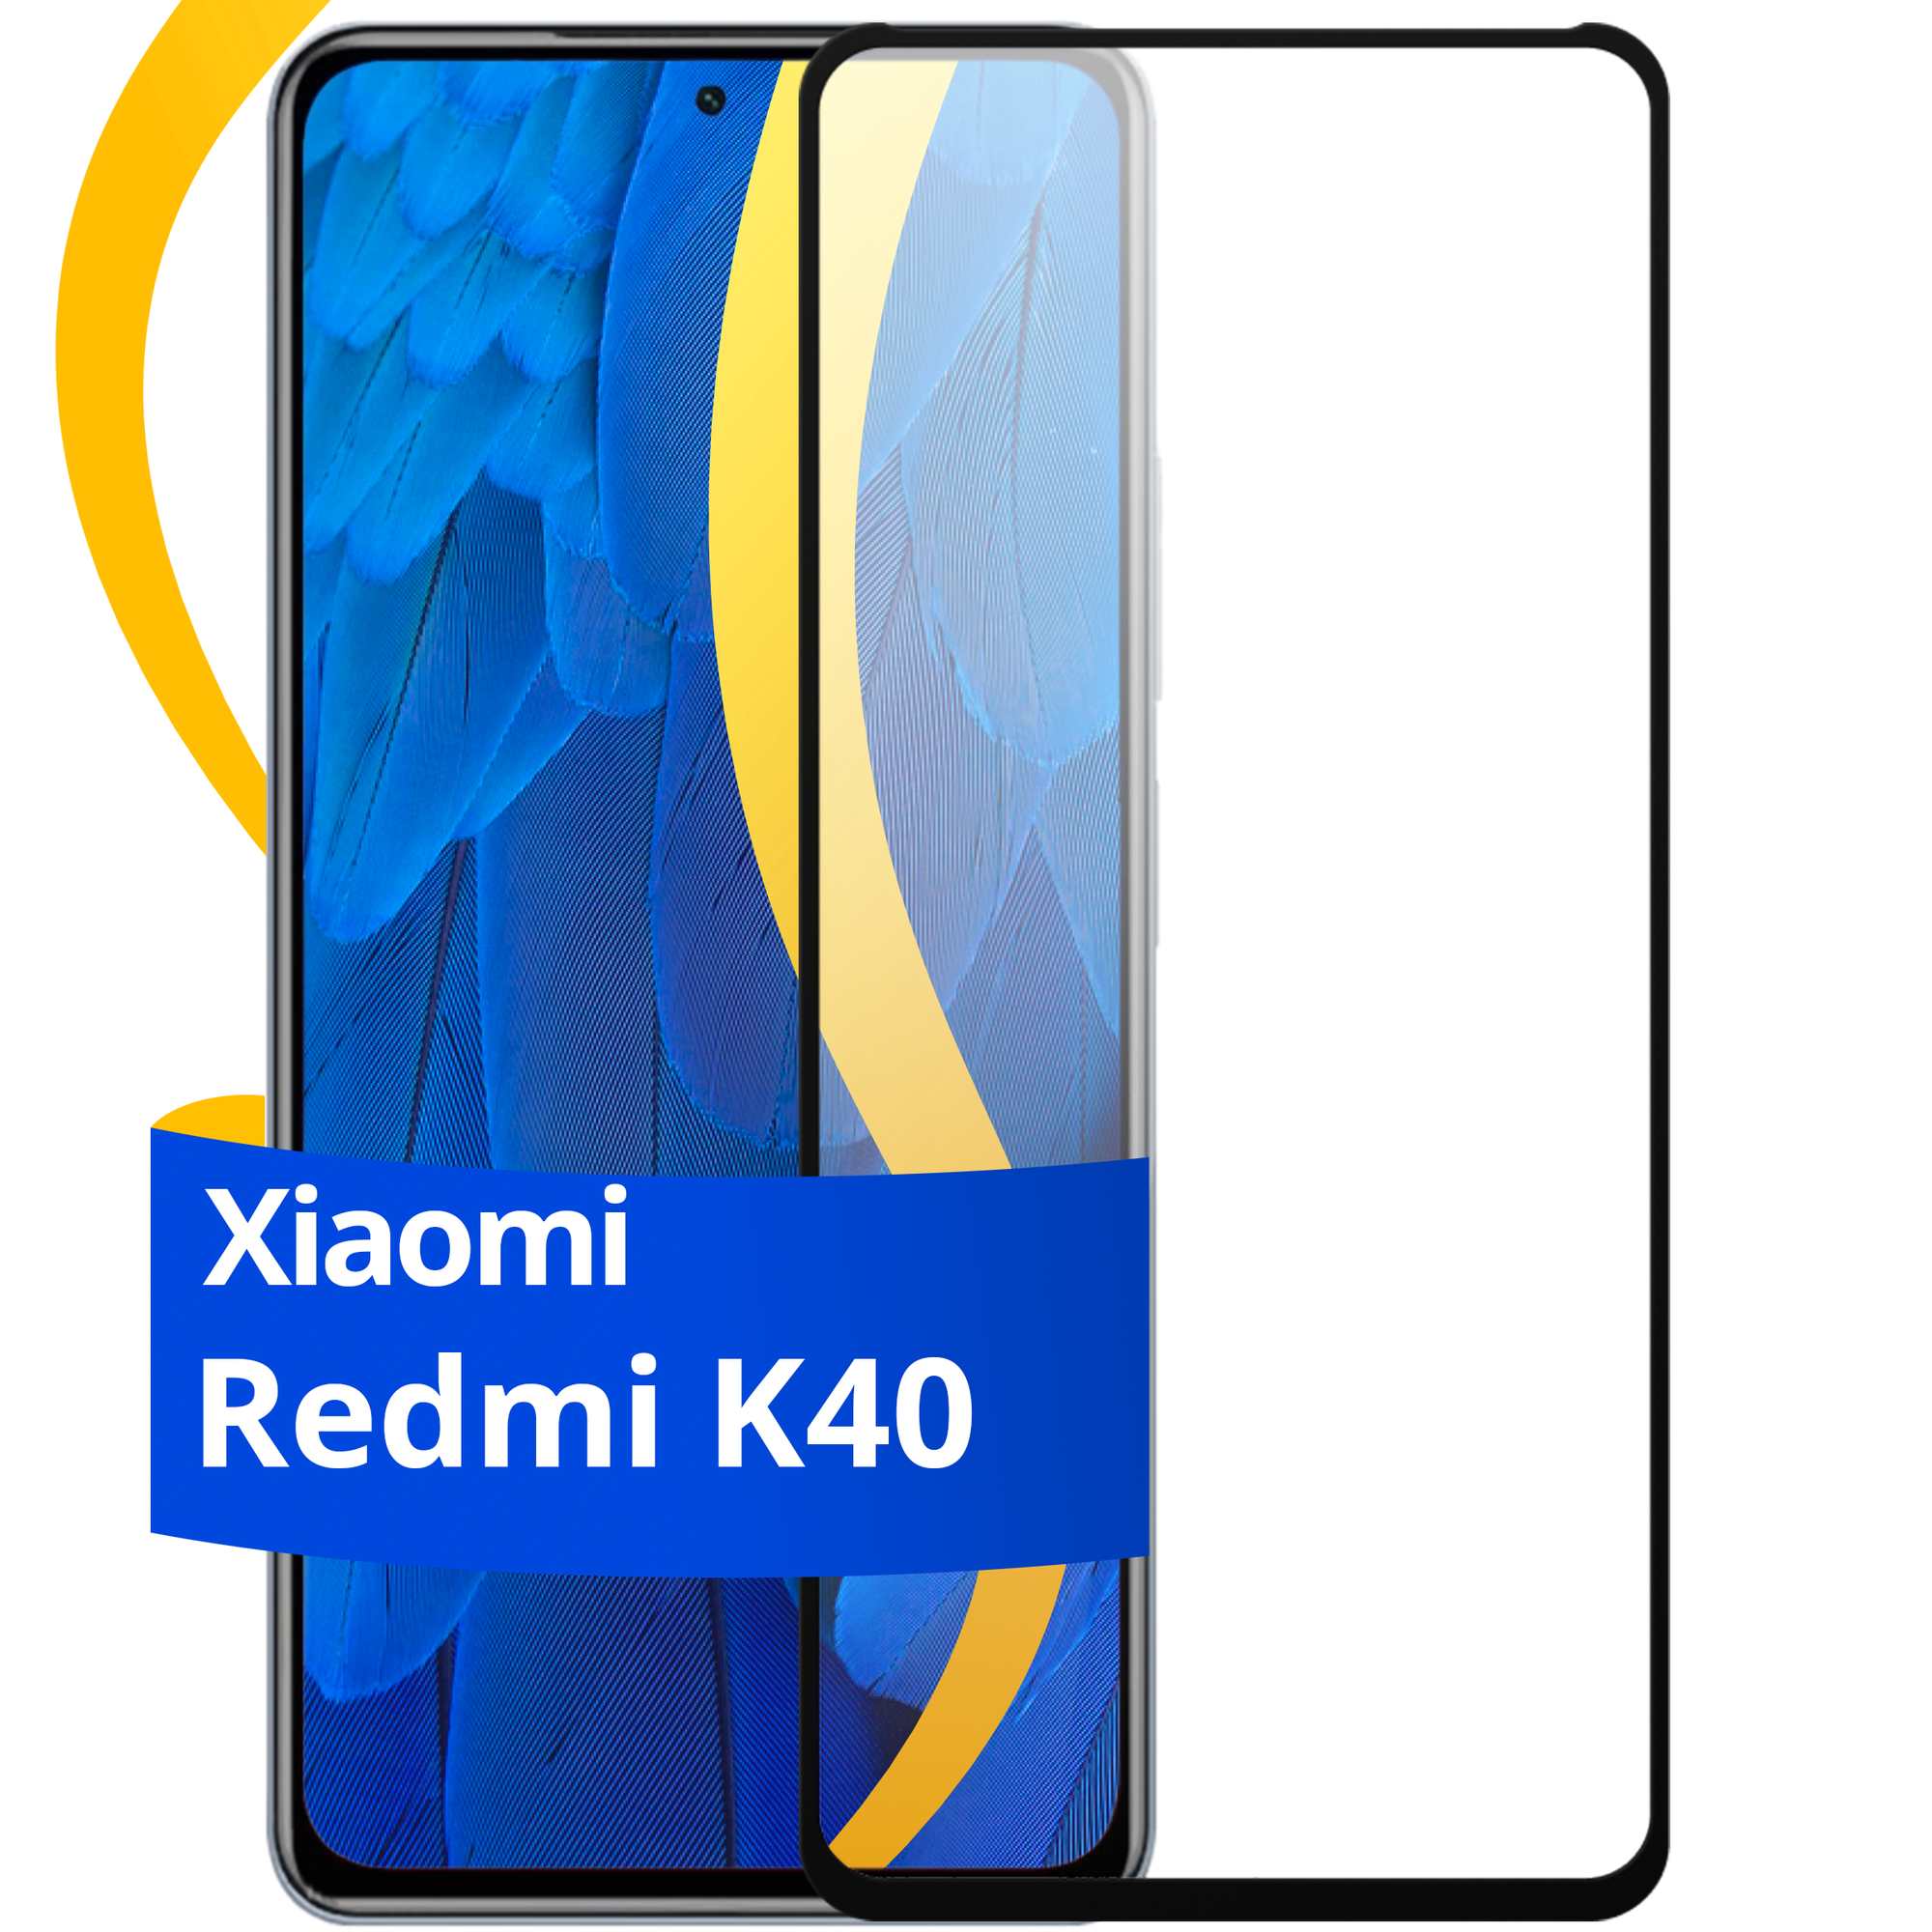 Глянцевое защитное стекло для телефона Xiaomi Redmi K40 / Противоударное стекло с олеофобным покрытием на смартфон Сяоми Редми К40